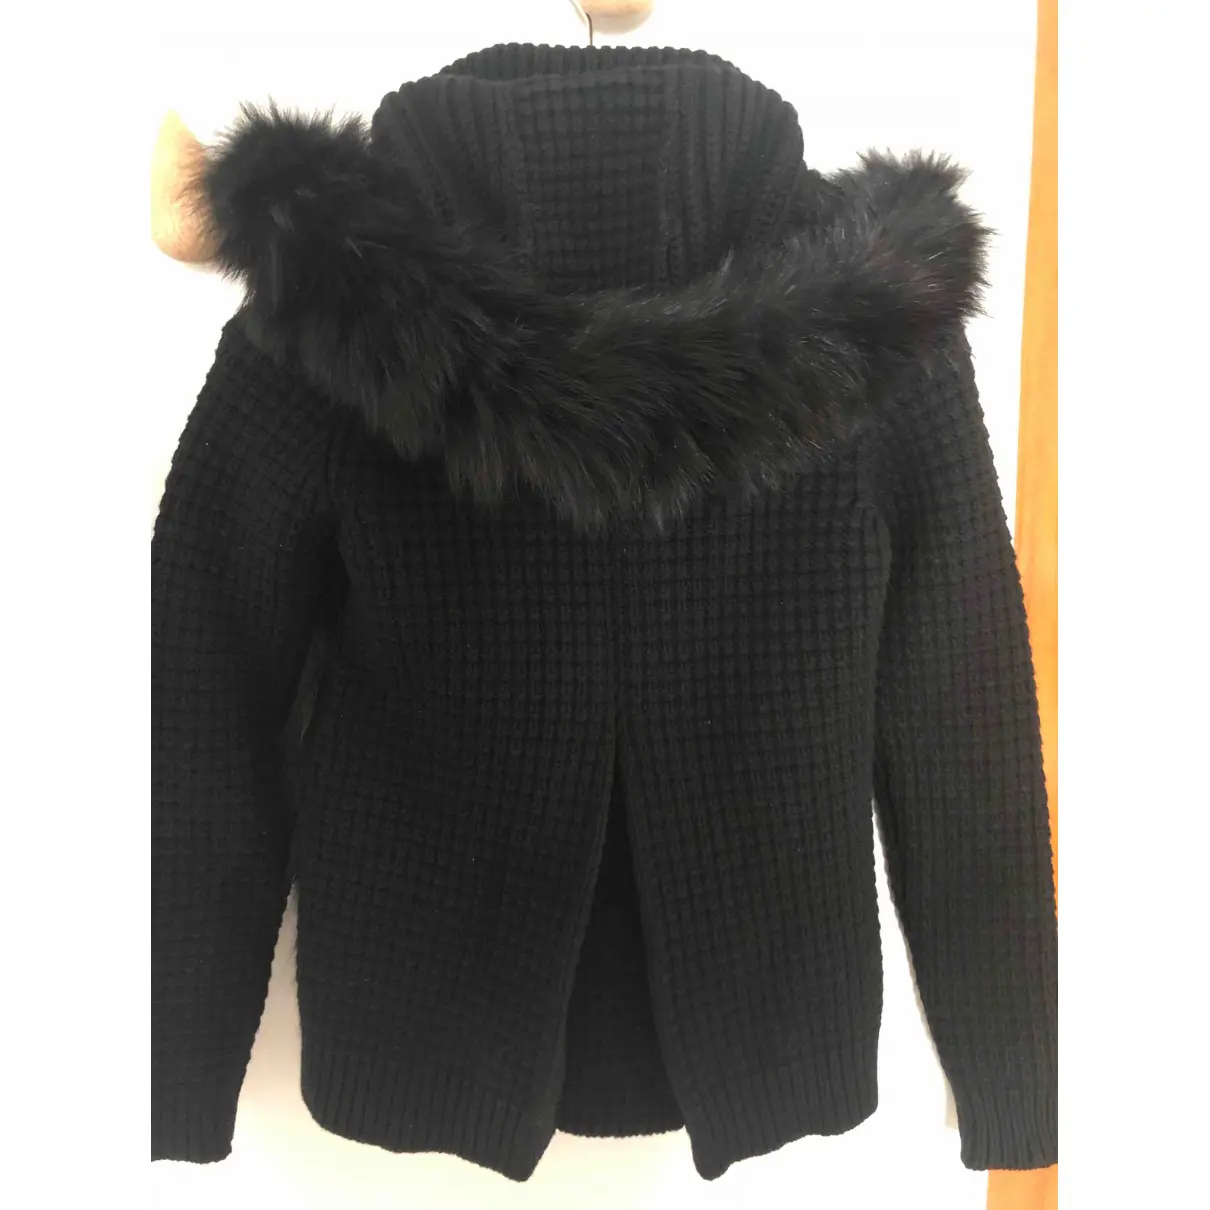 Buy Bark Wool jacket online